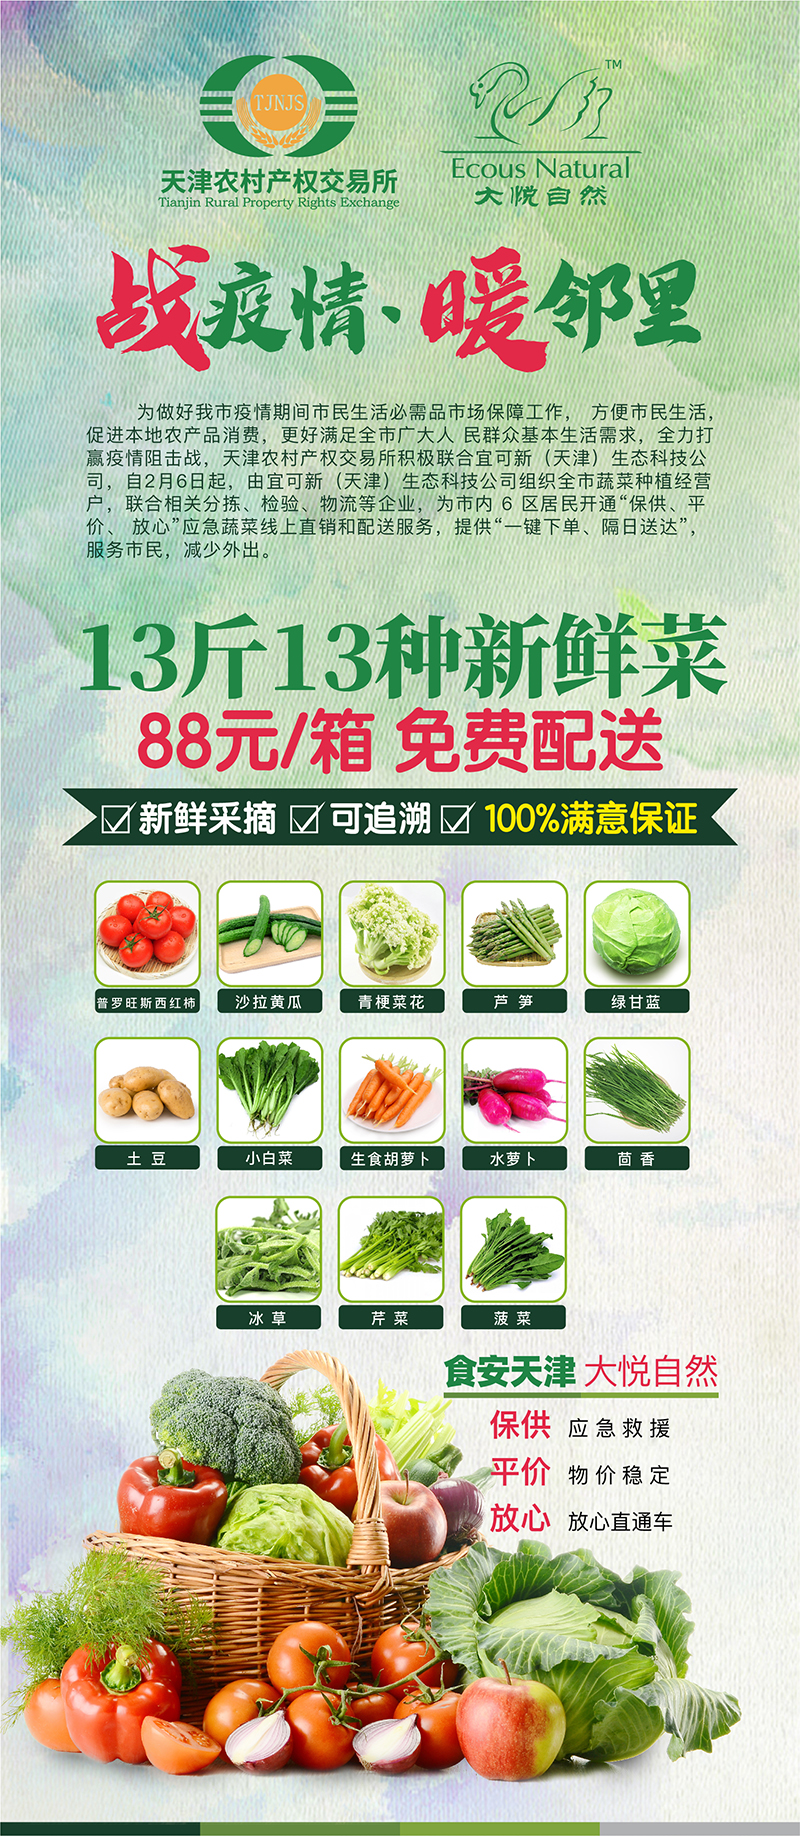 【天津包邮 隔日达】平价放心新鲜蔬菜箱（13斤13种蔬菜）第十期菜单已更新